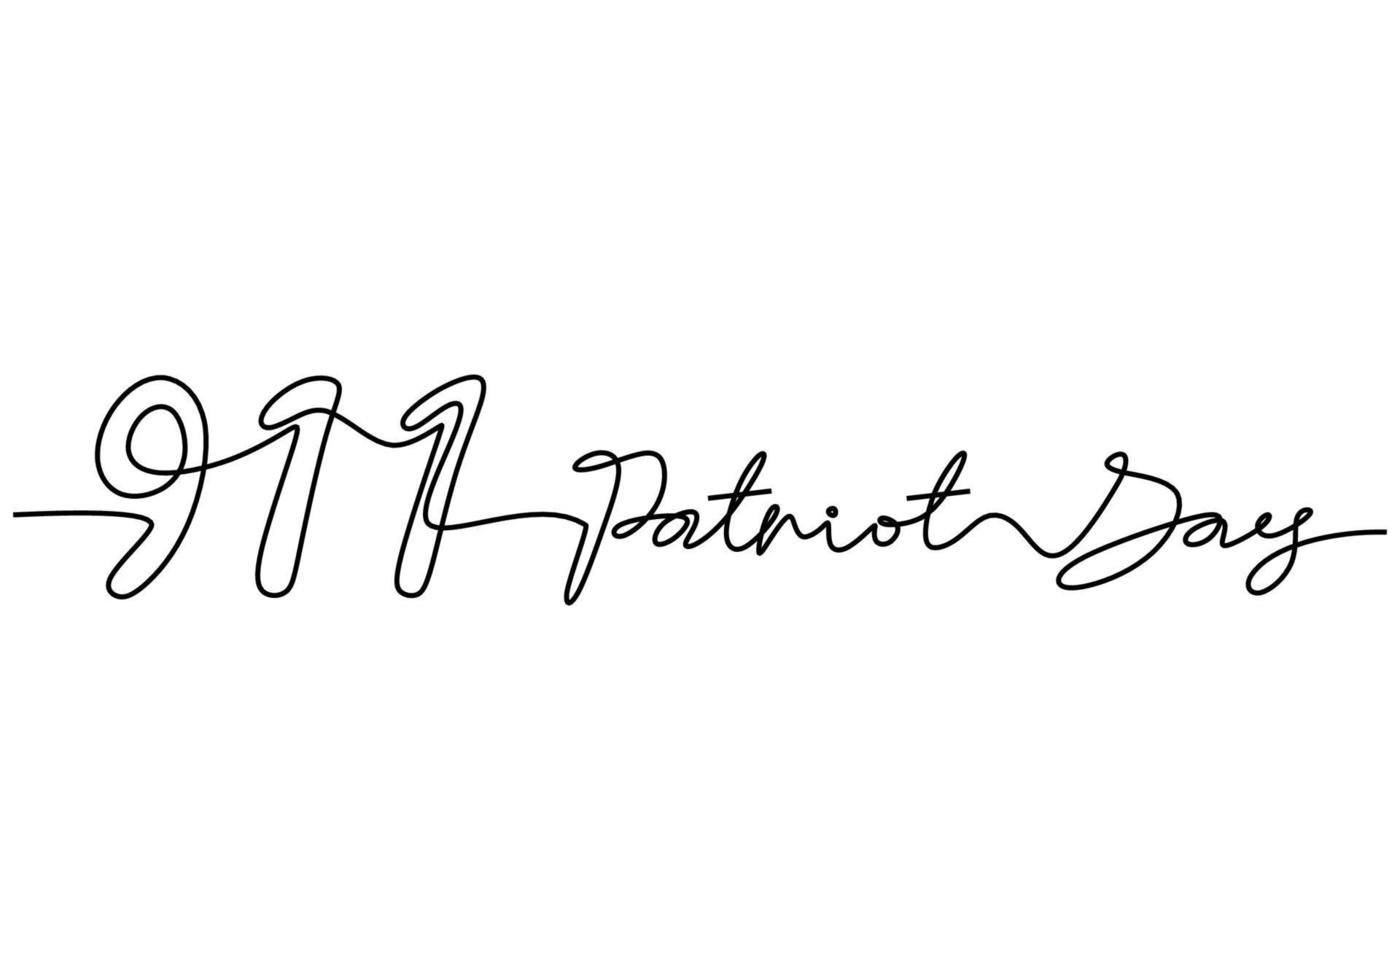 kontinuerlig en rad med 911 patriot dag brev ord handskriven vektor